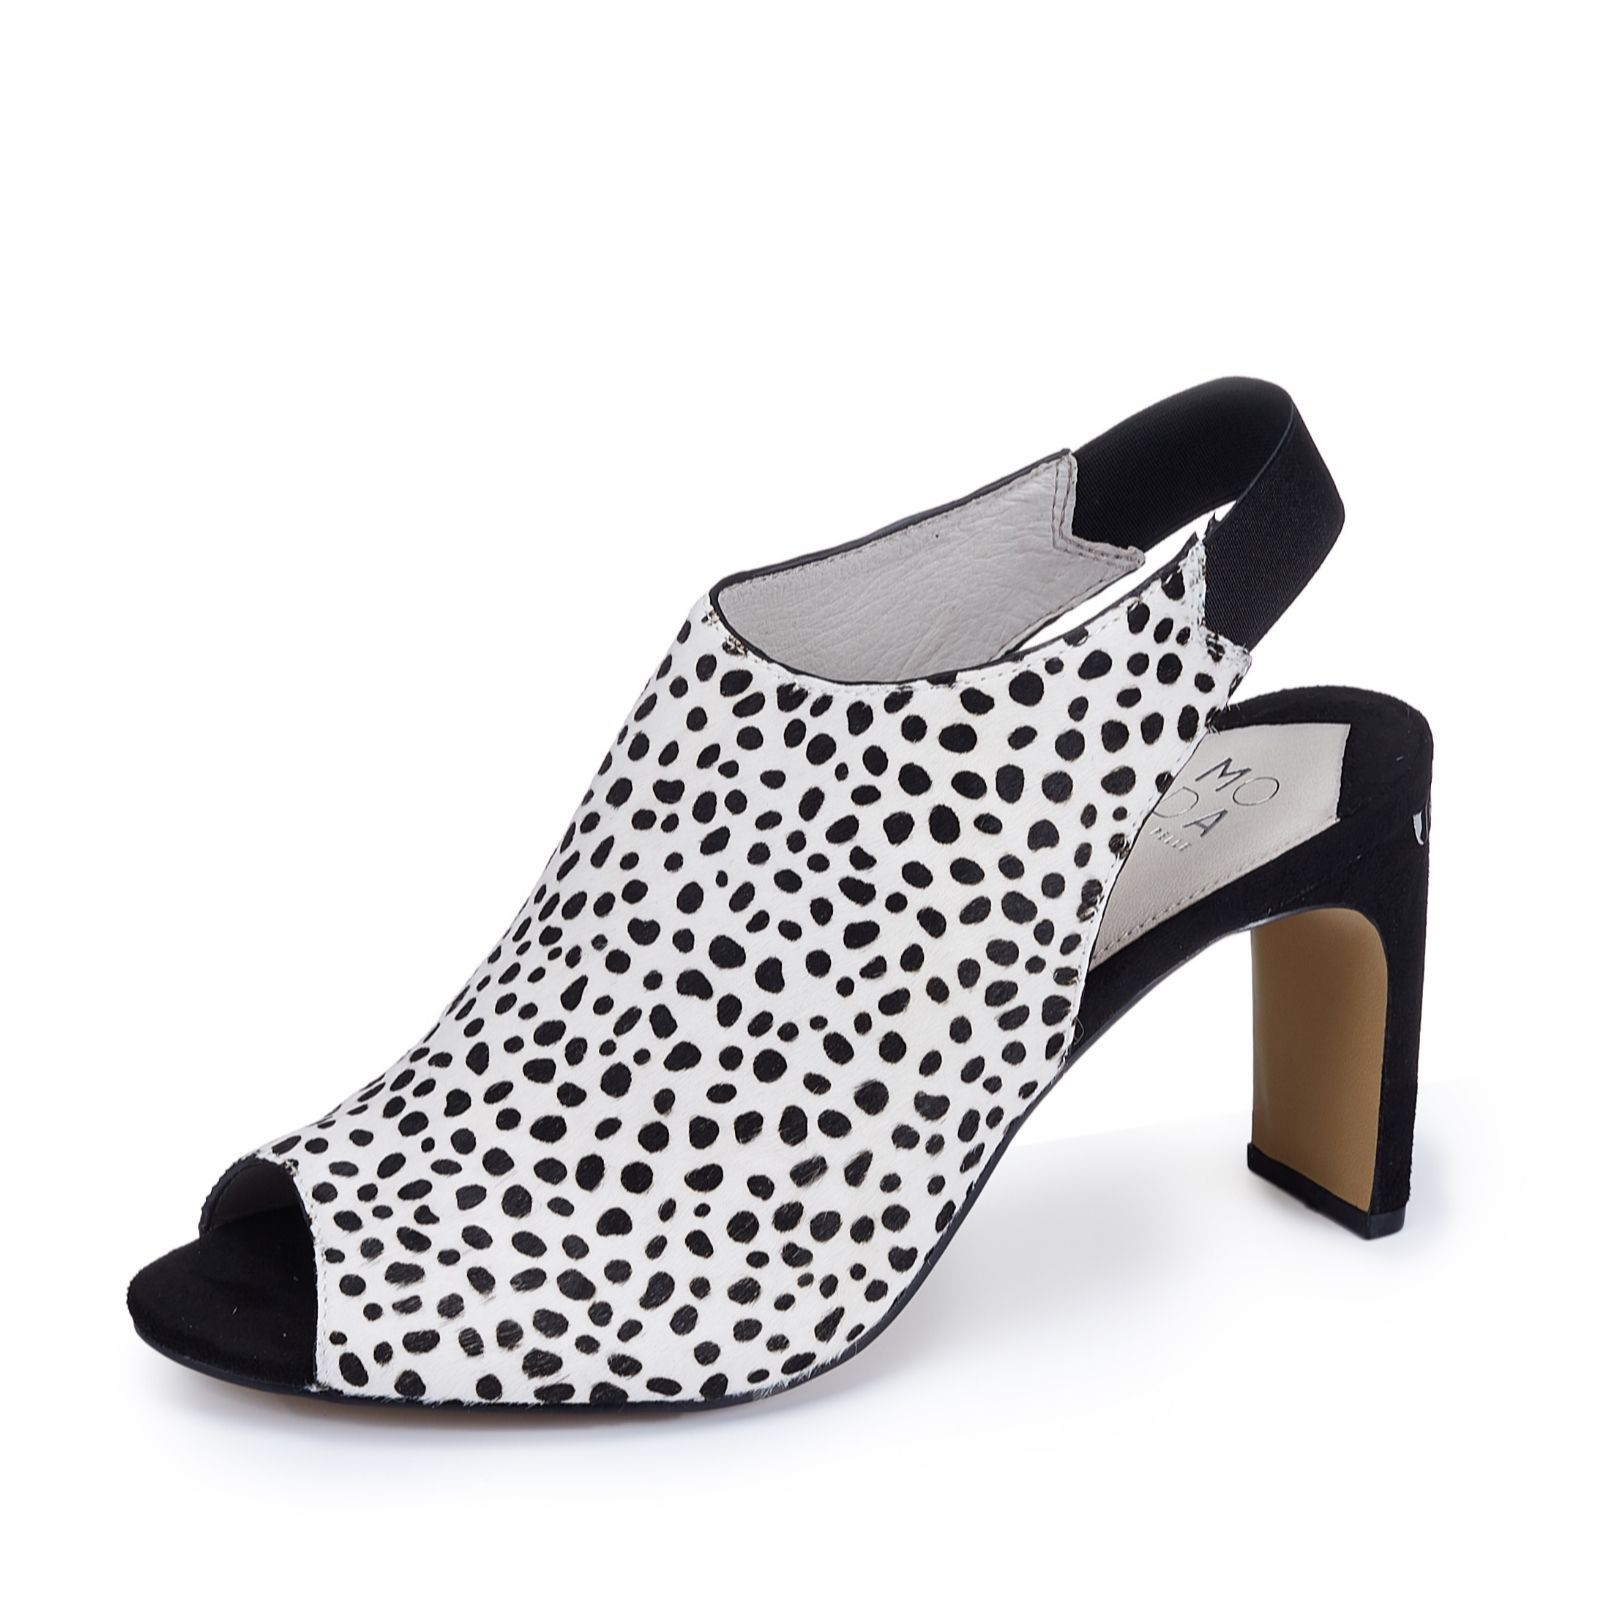 moda in pelle leopard print shoes